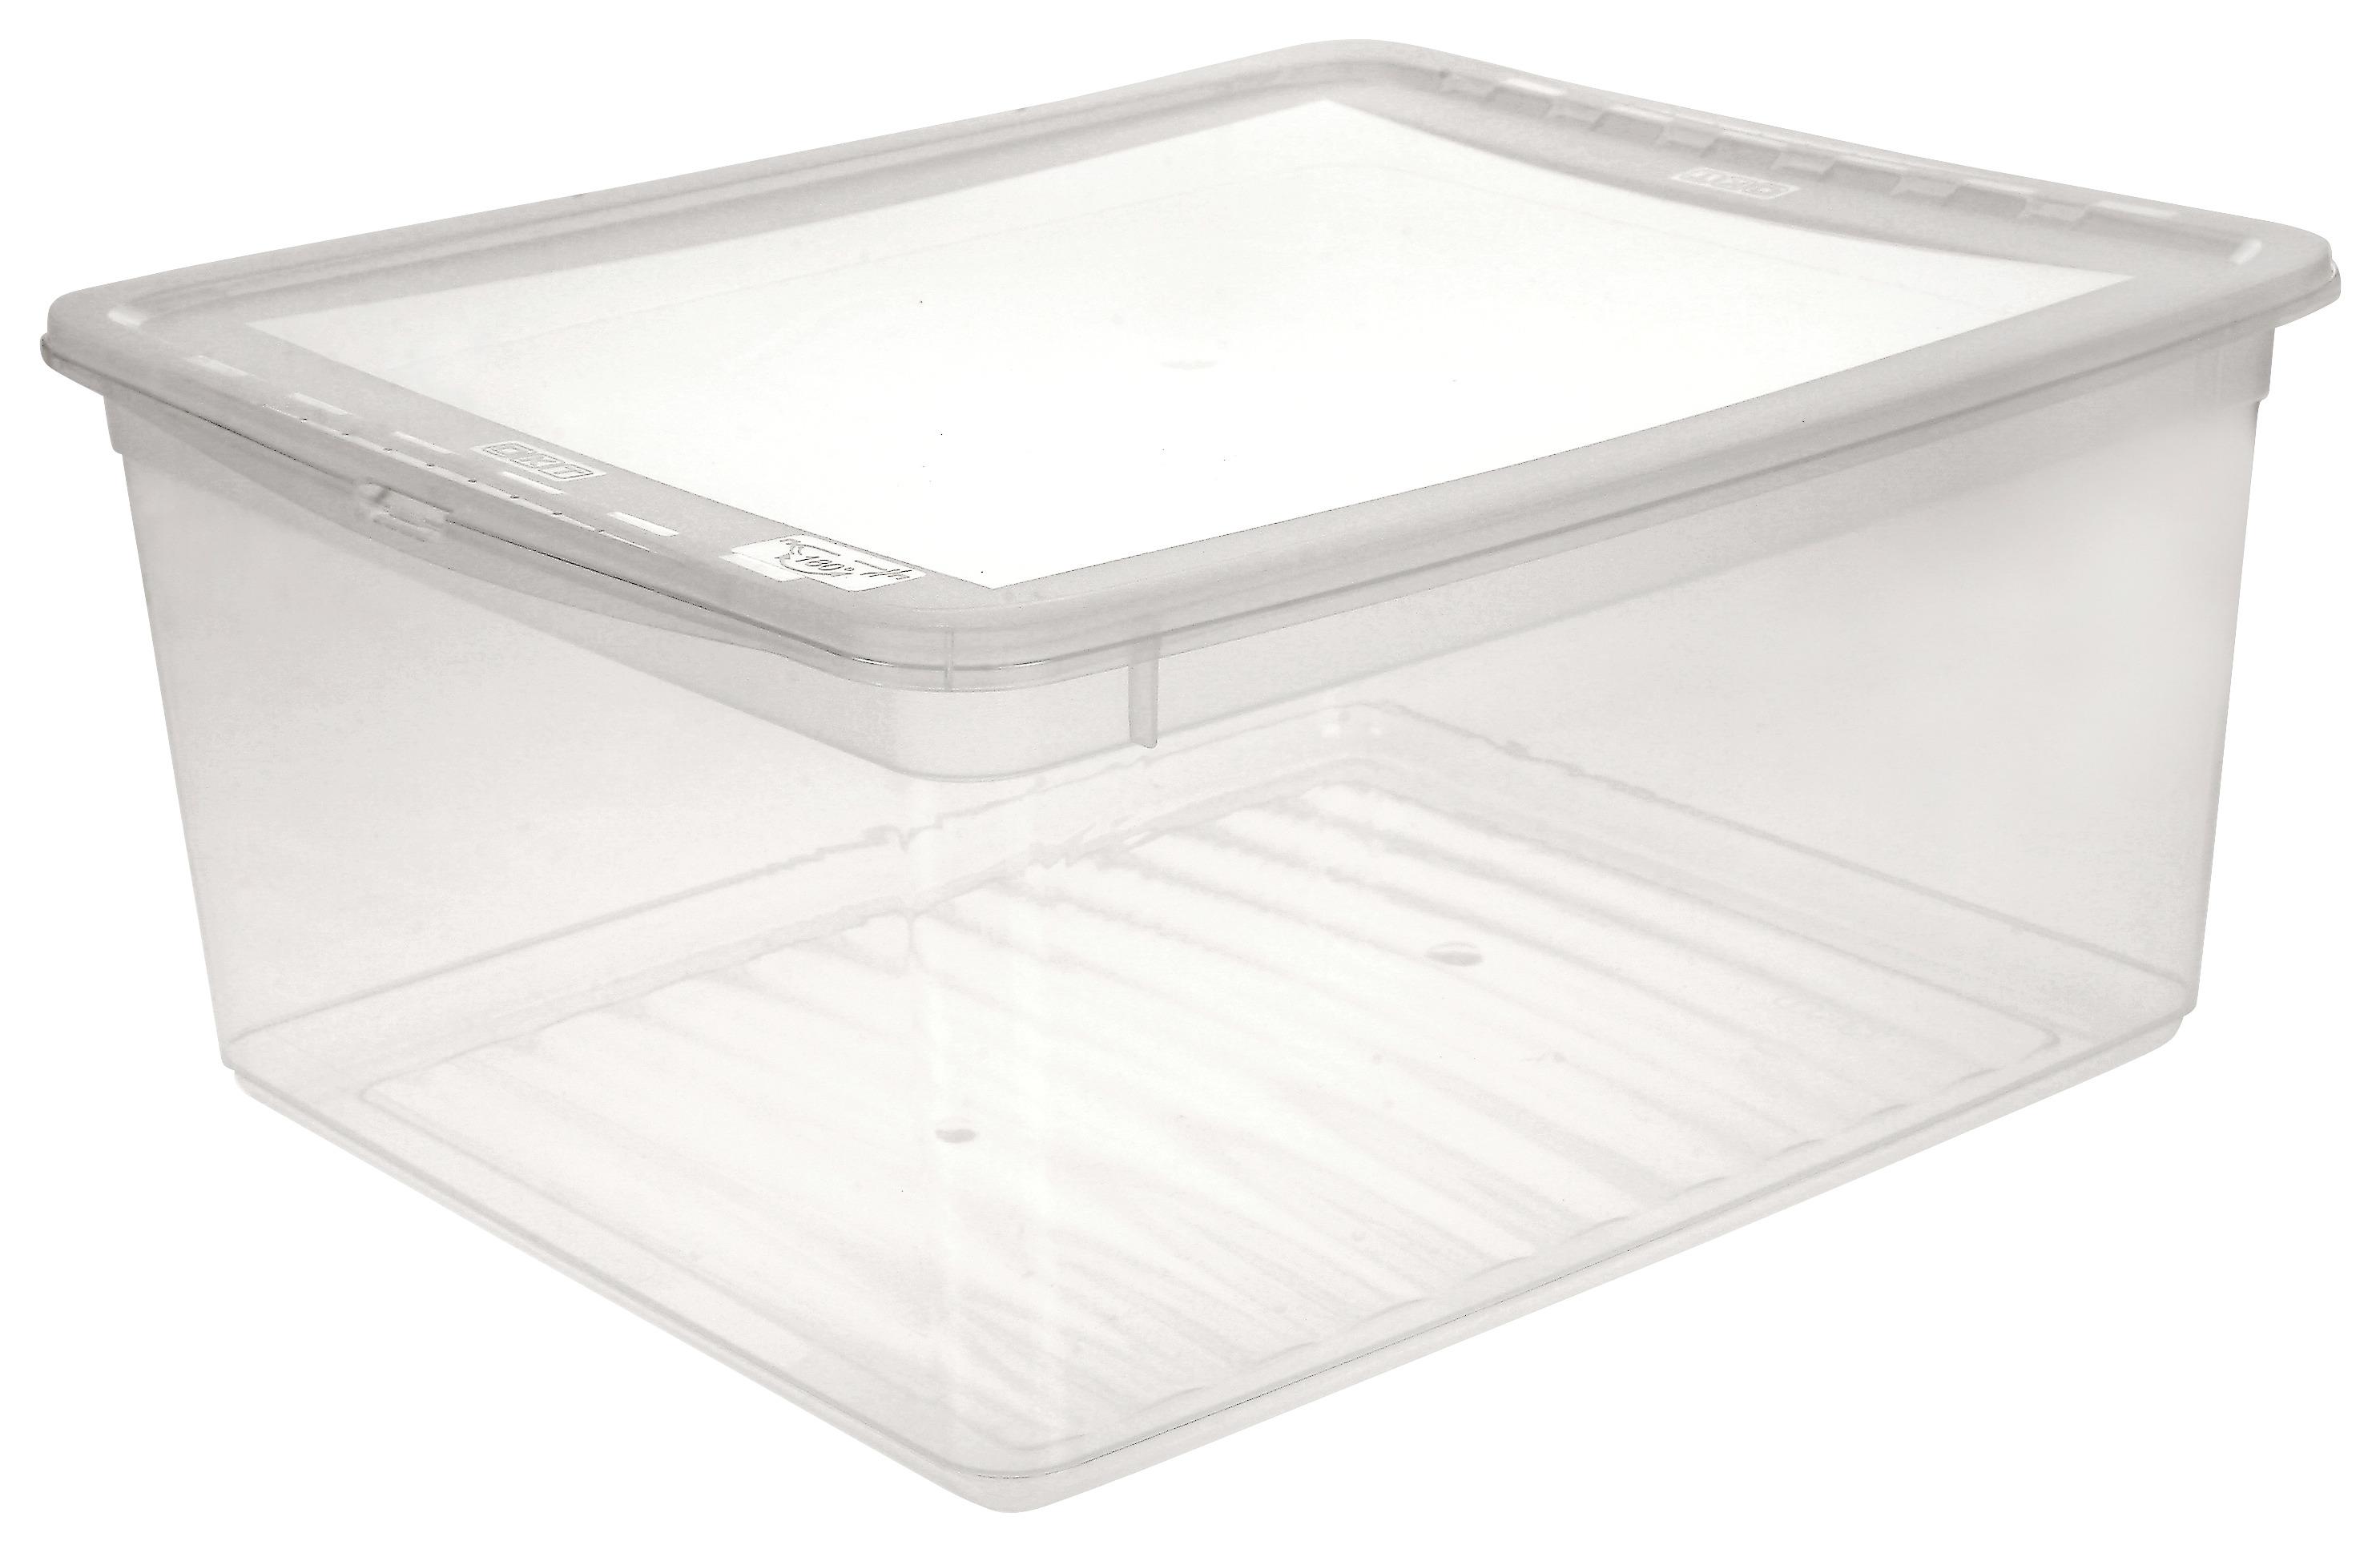 Aufbewahrungsbox Bea mit Deckel Kunststoff 39x33,5x18 cm - Transparent, KONVENTIONELL, Kunststoff (39/33,5/18cm) - Homezone